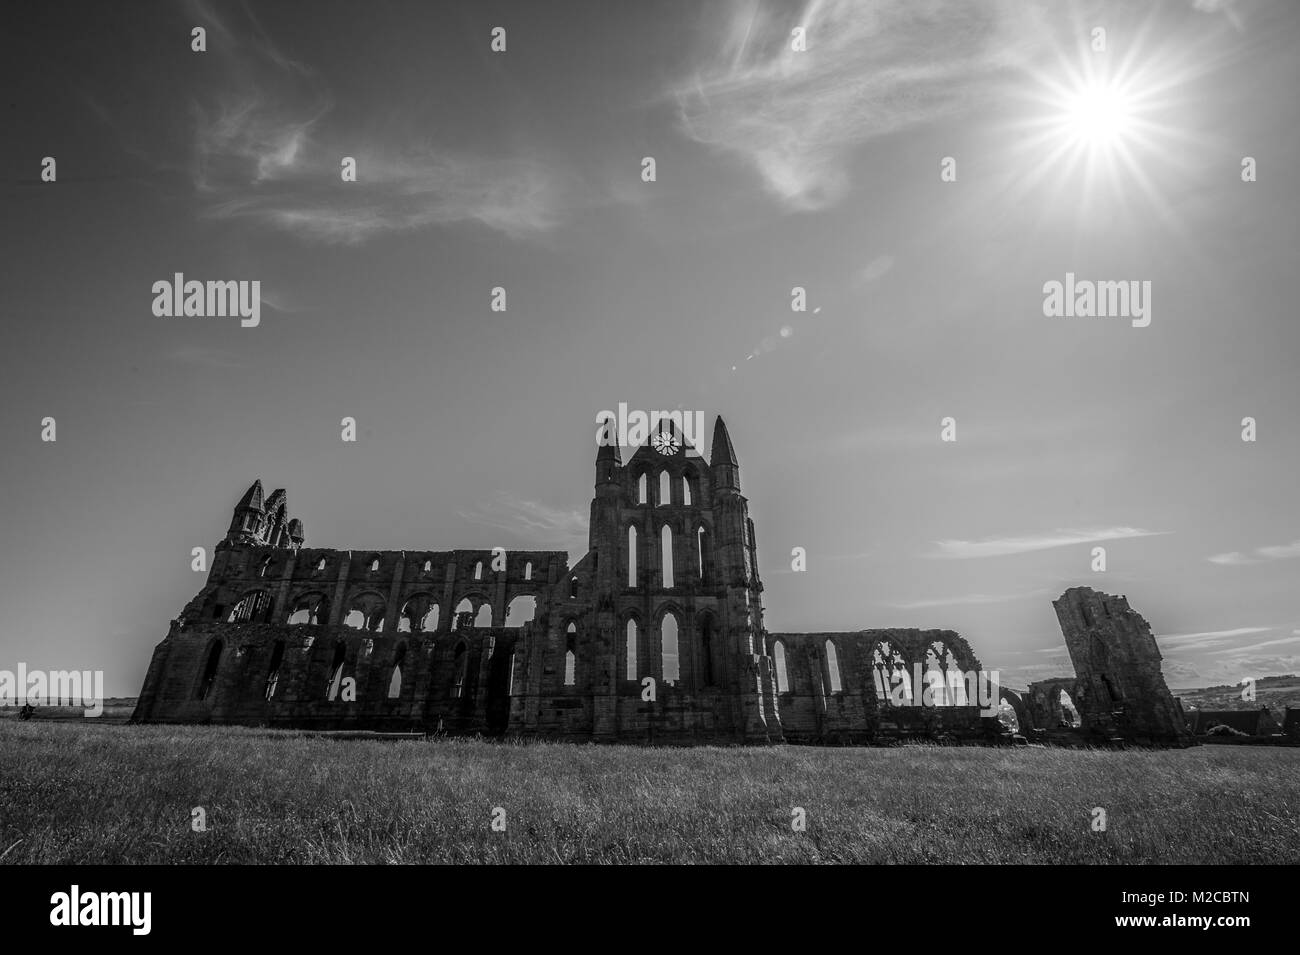 Le soleil brille sur les ruines de l'abbaye de Whitby, Whitby, dans le Yorkshire, UK Banque D'Images